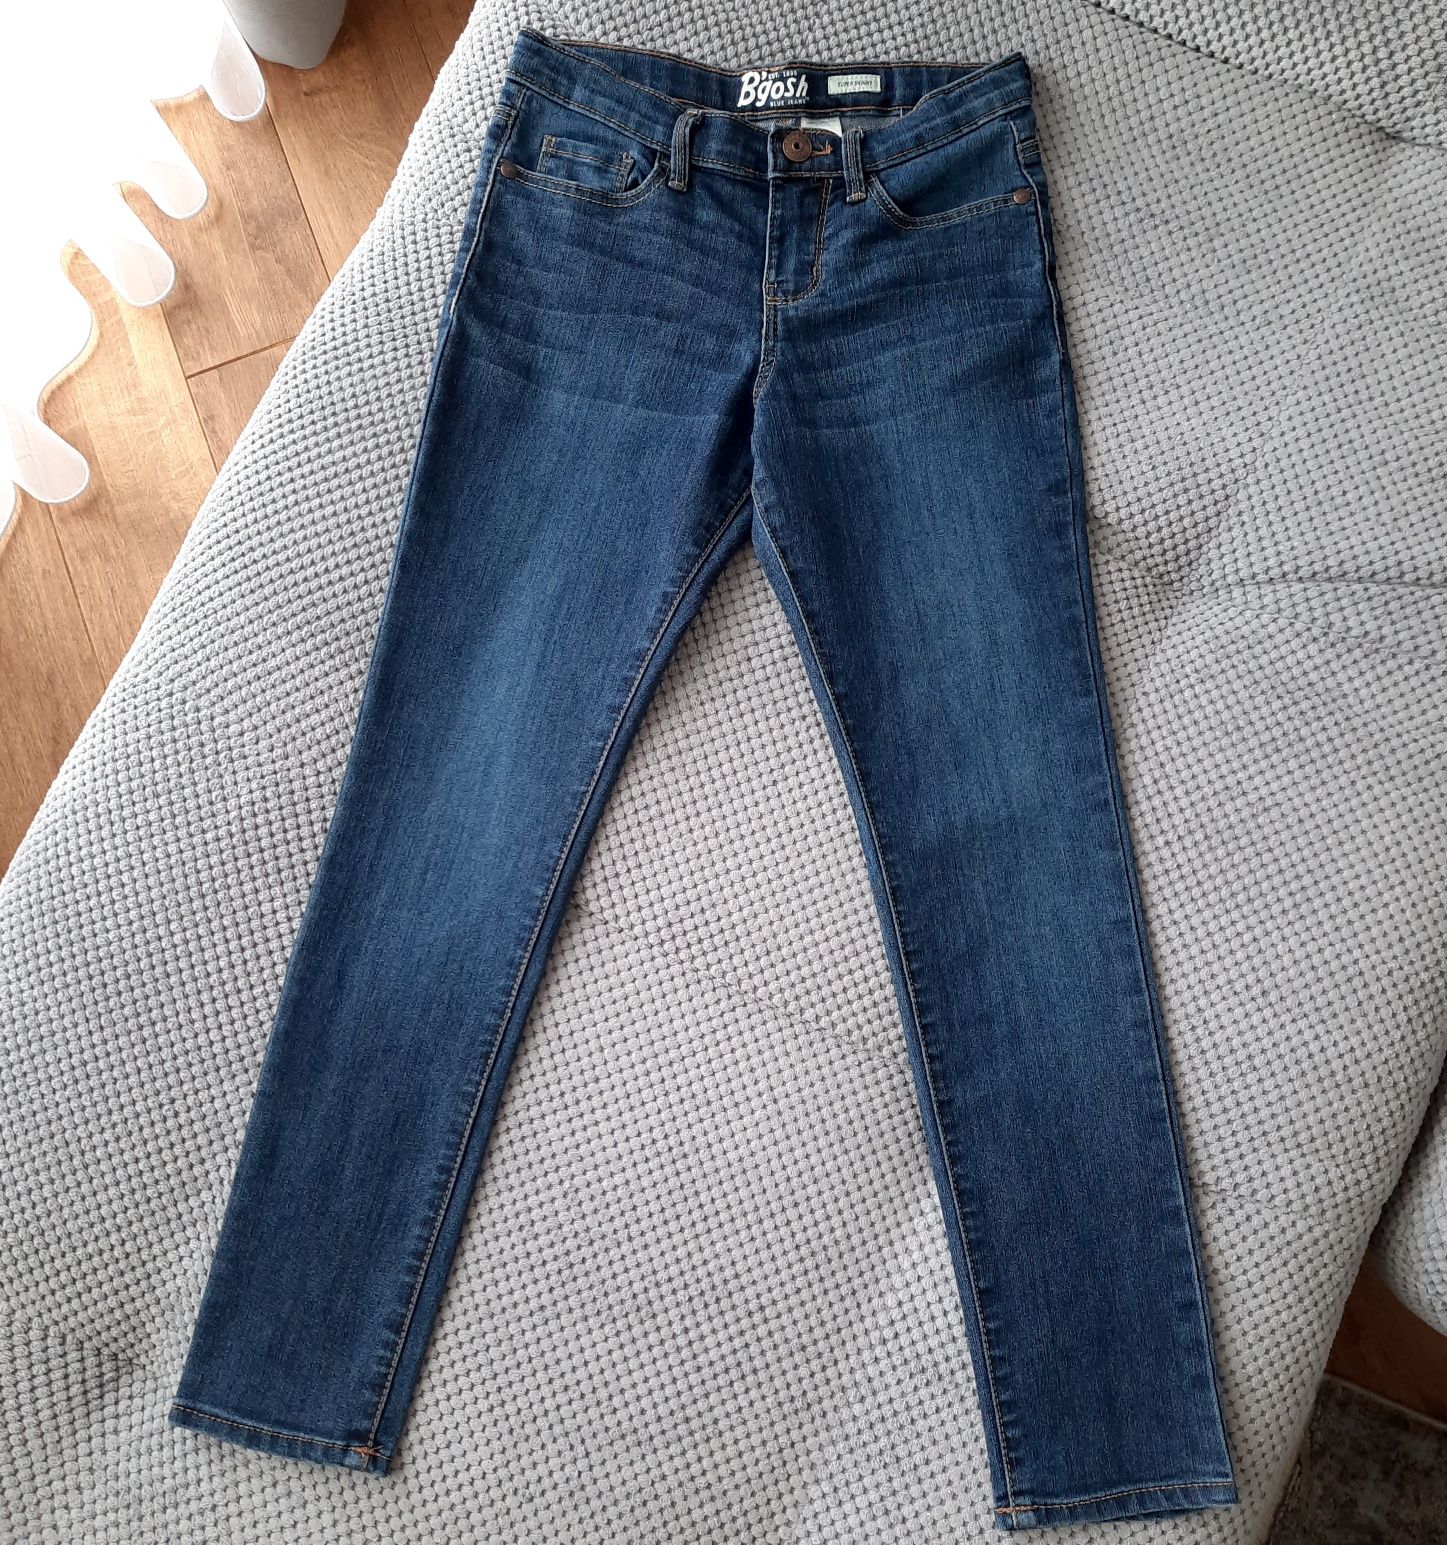 Джинси, джинсы, джегінси, брюки oshkosh b'gosh super skinny на 8р.